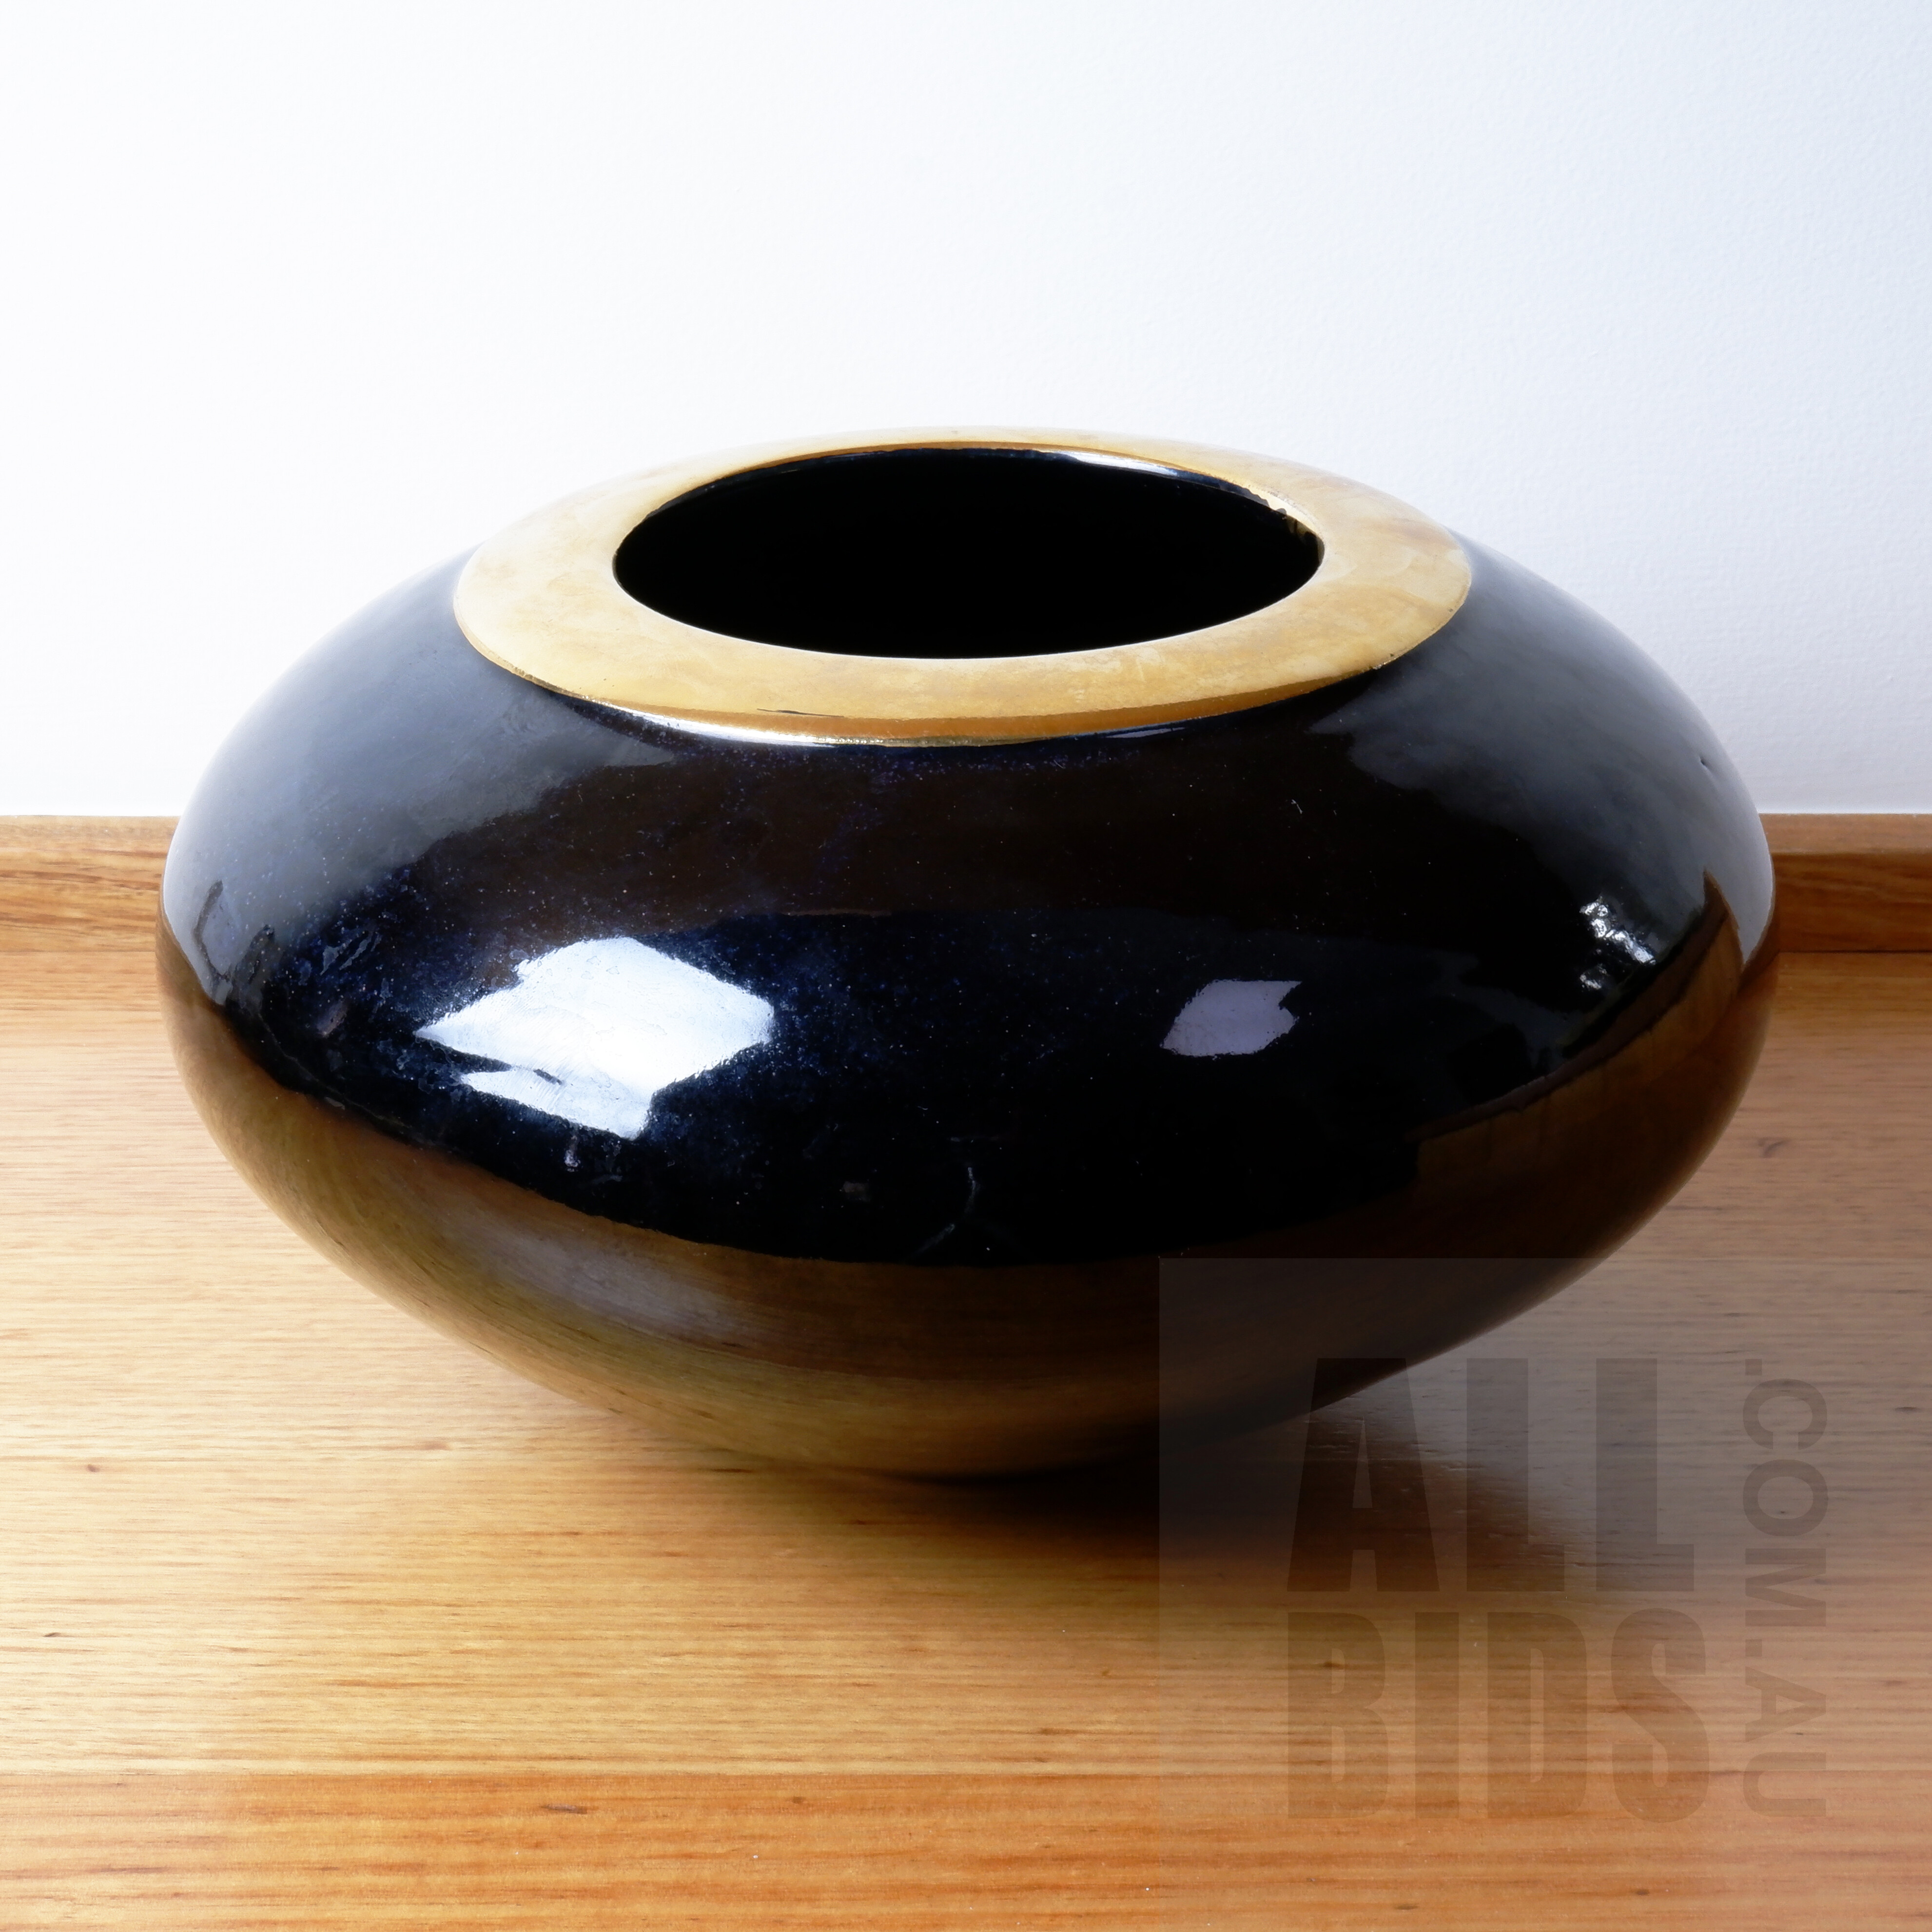 'Australian Glazed Ceramic Bowl with Gold Trim'